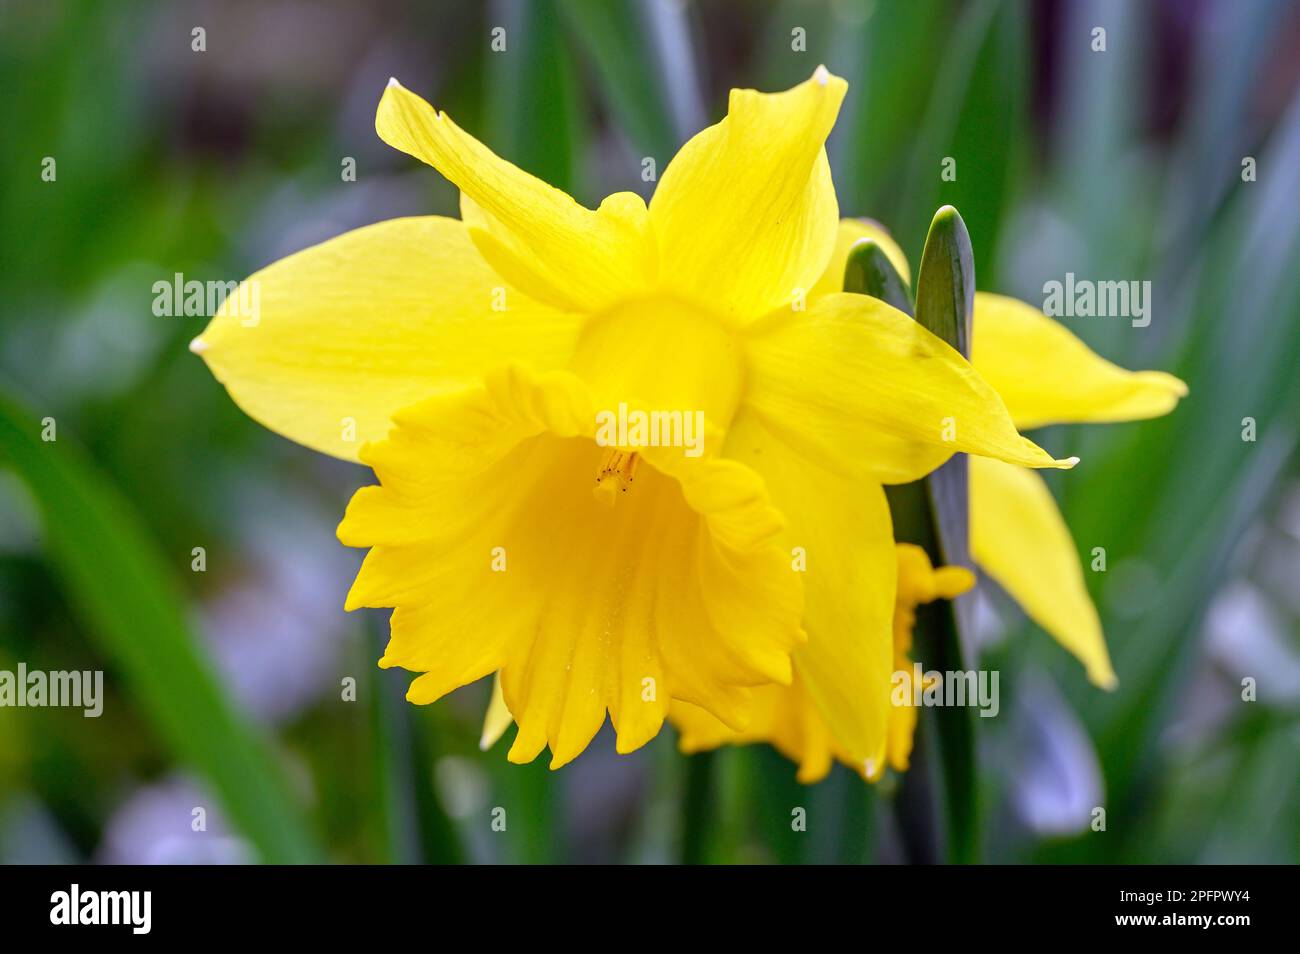 Daffodil en fleur. Gros plan de la tête d'une jonquille. Macro photographie d'une fleur jaune à Beckenham, Kent, Royaume-Uni. Banque D'Images